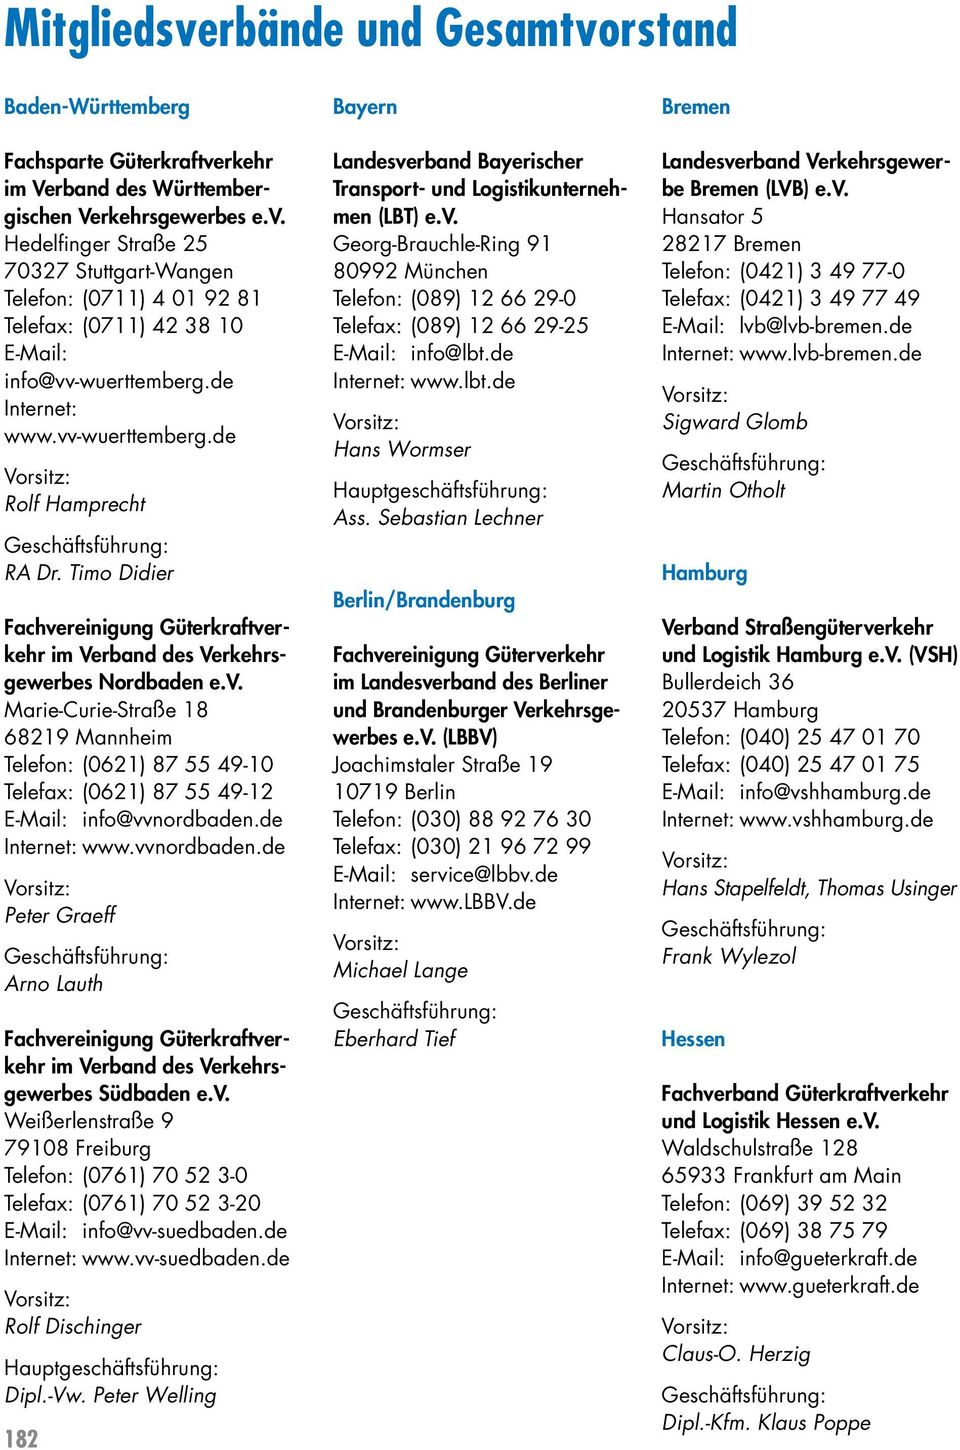 de Internet: www.vvnordbaden.de Peter Graeff Arno Lauth im Verband des Verkehrsgewerbes Südbaden e.v. Weißerlenstraße 9 79108 Freiburg Telefon: (0761) 70 52 3-0 Telefax: (0761) 70 52 3-20 E-Mail: info@vv-suedbaden.